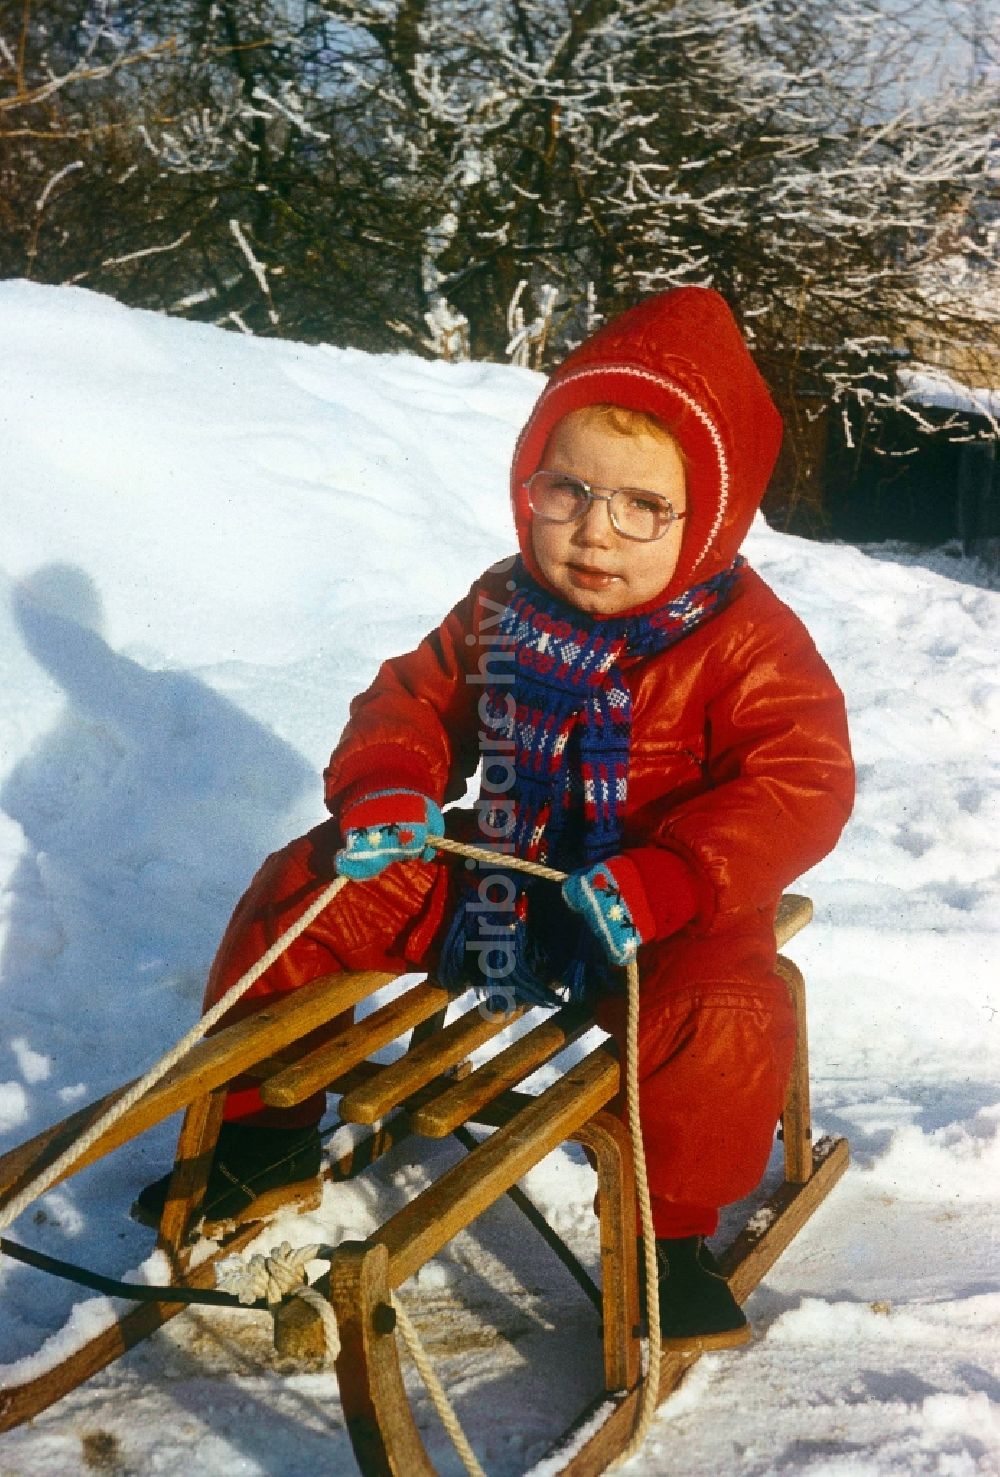 DDR-Fotoarchiv: Neustrelitz - Kleines Kind auf einem Schlitten im Schnee in Neustrelitz in Mecklenburg-Vorpommern in der DDR